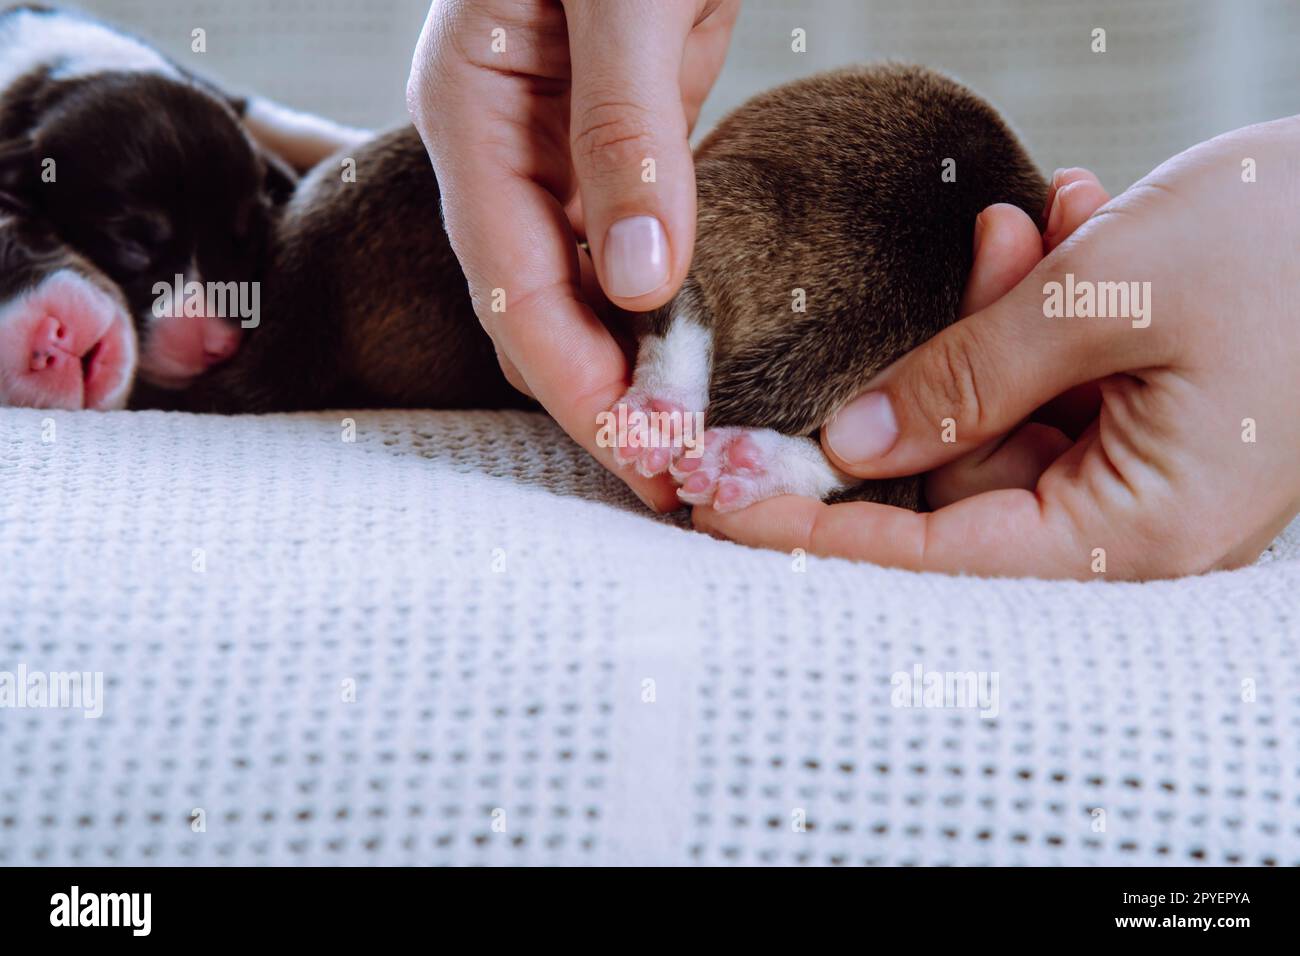 Le mani femminili tagliate tengono con cura e mostrano minuscole zampe rosa di cucciolo gallese di corgi, dormi su una coperta bianca. Cura degli animali domestici Foto Stock